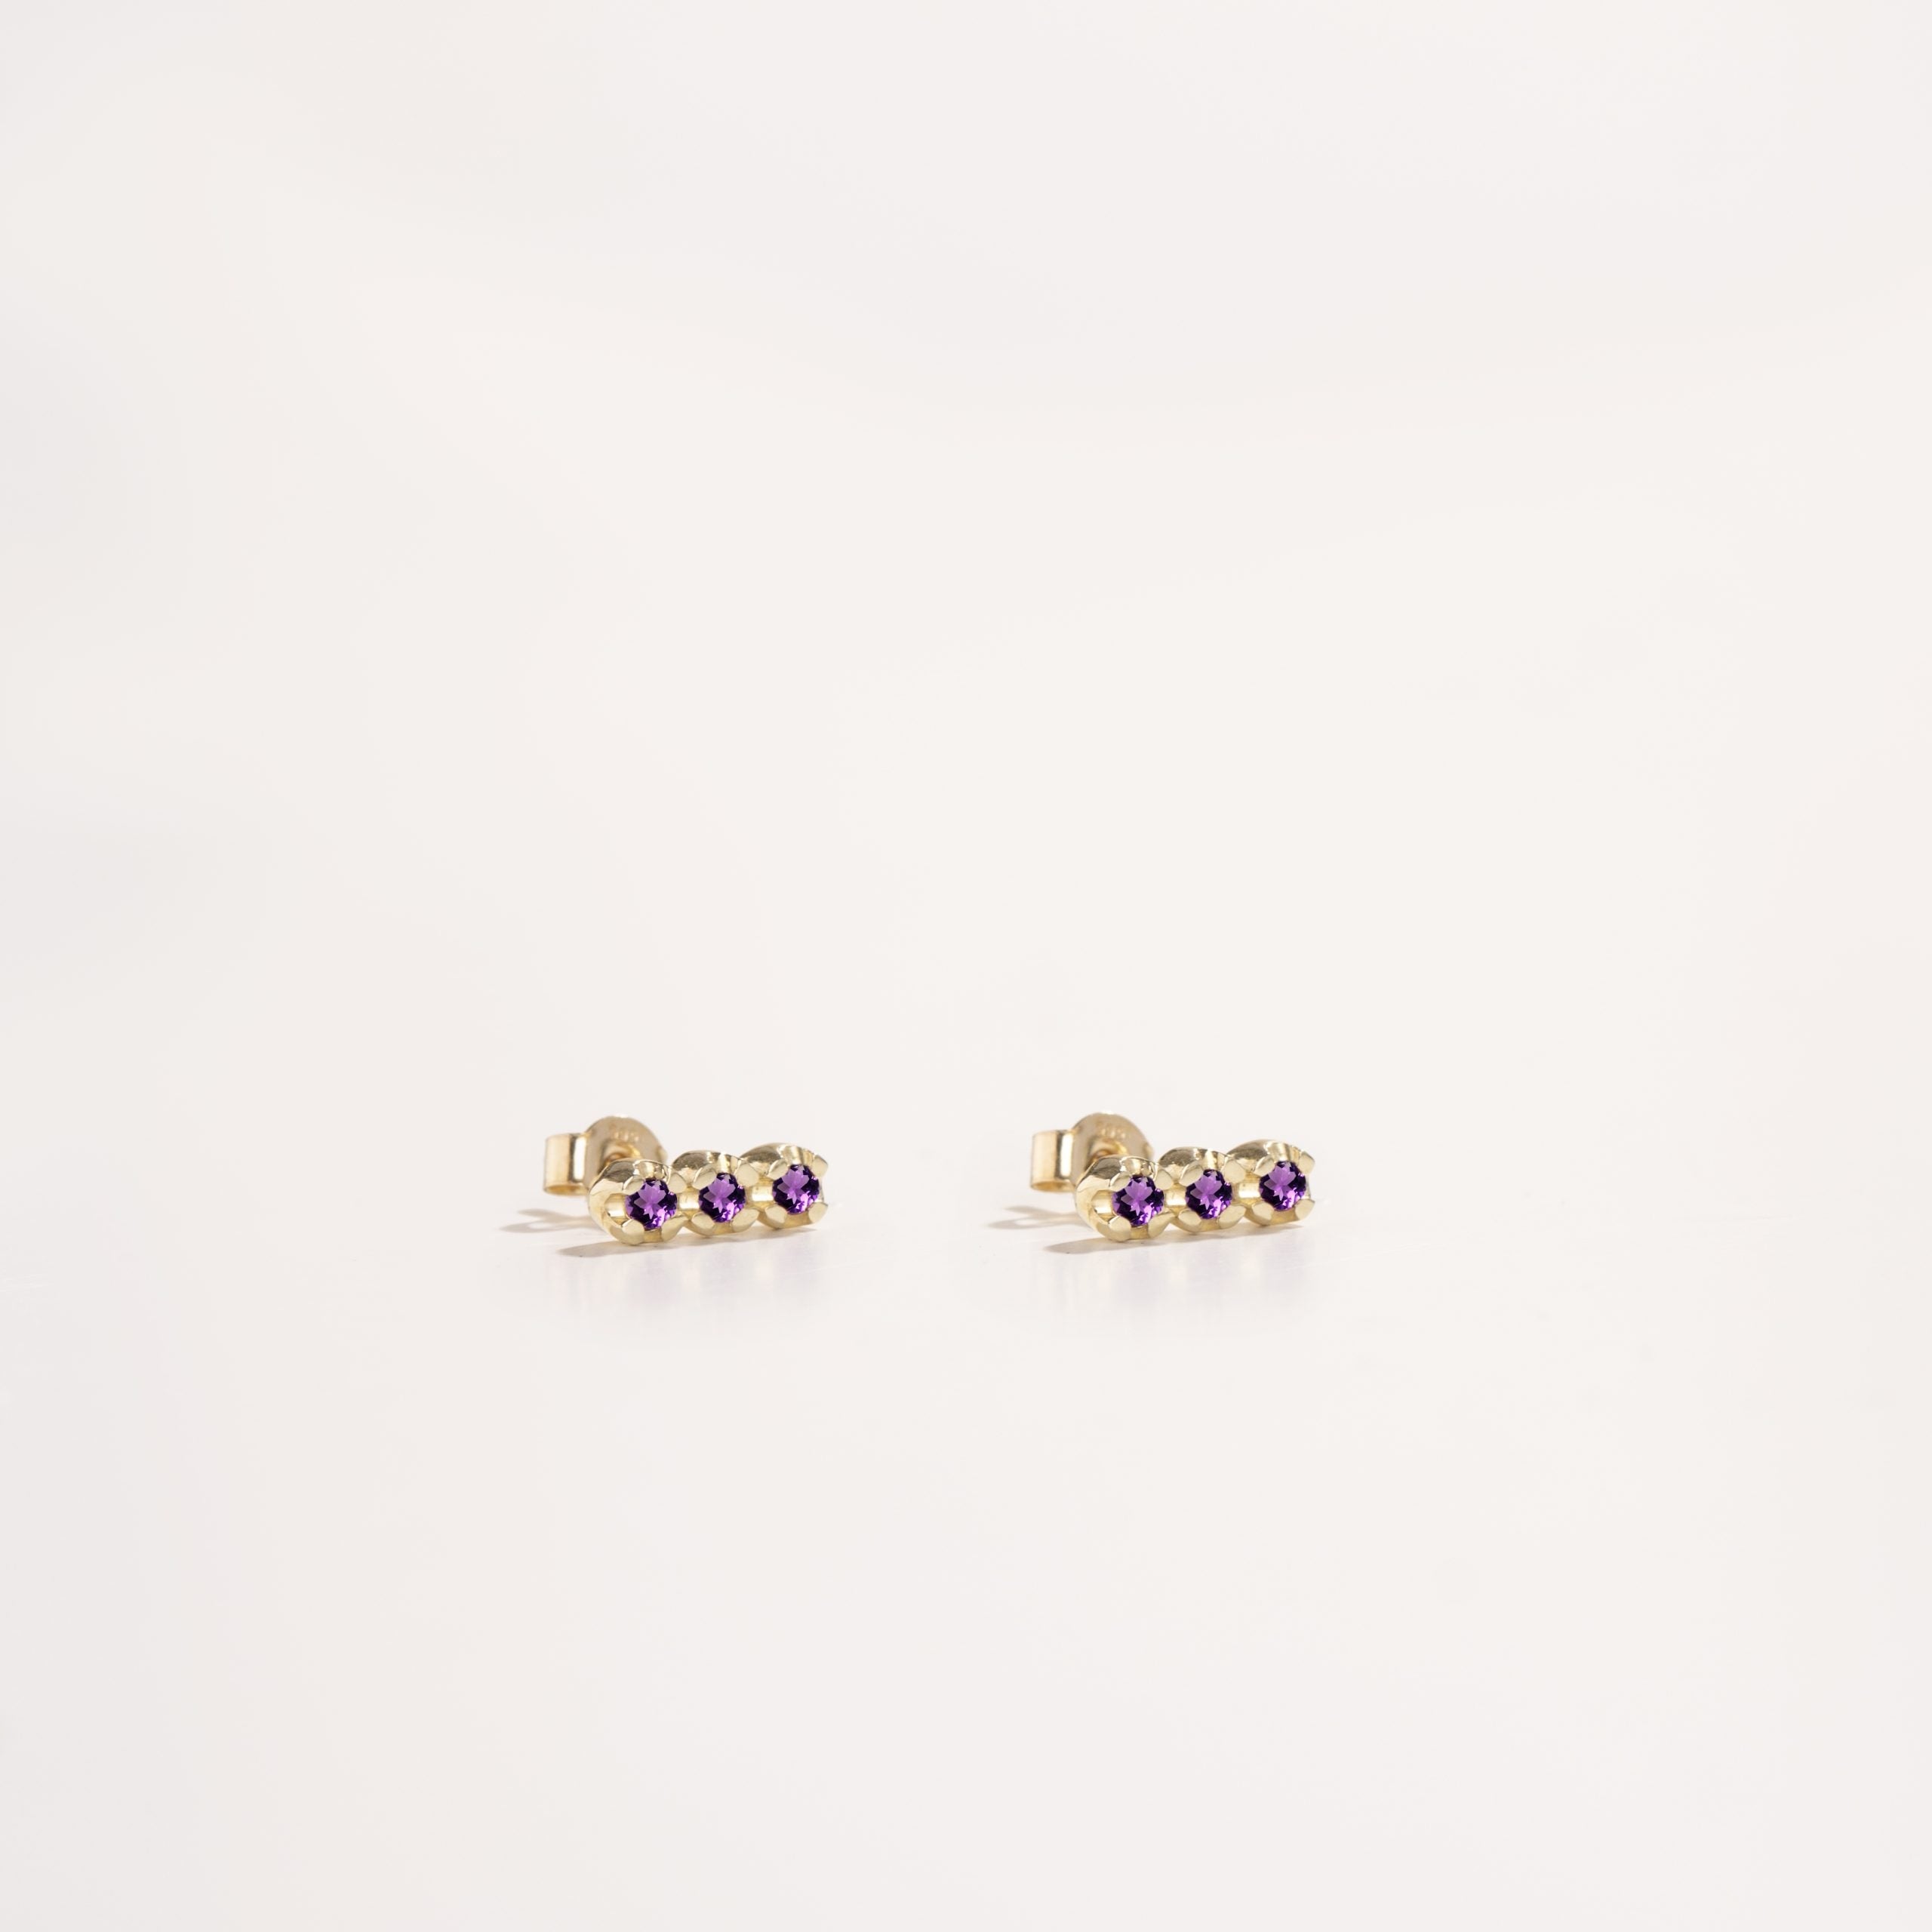 3 Purple Amethyst Stud Earrings 14K Gold